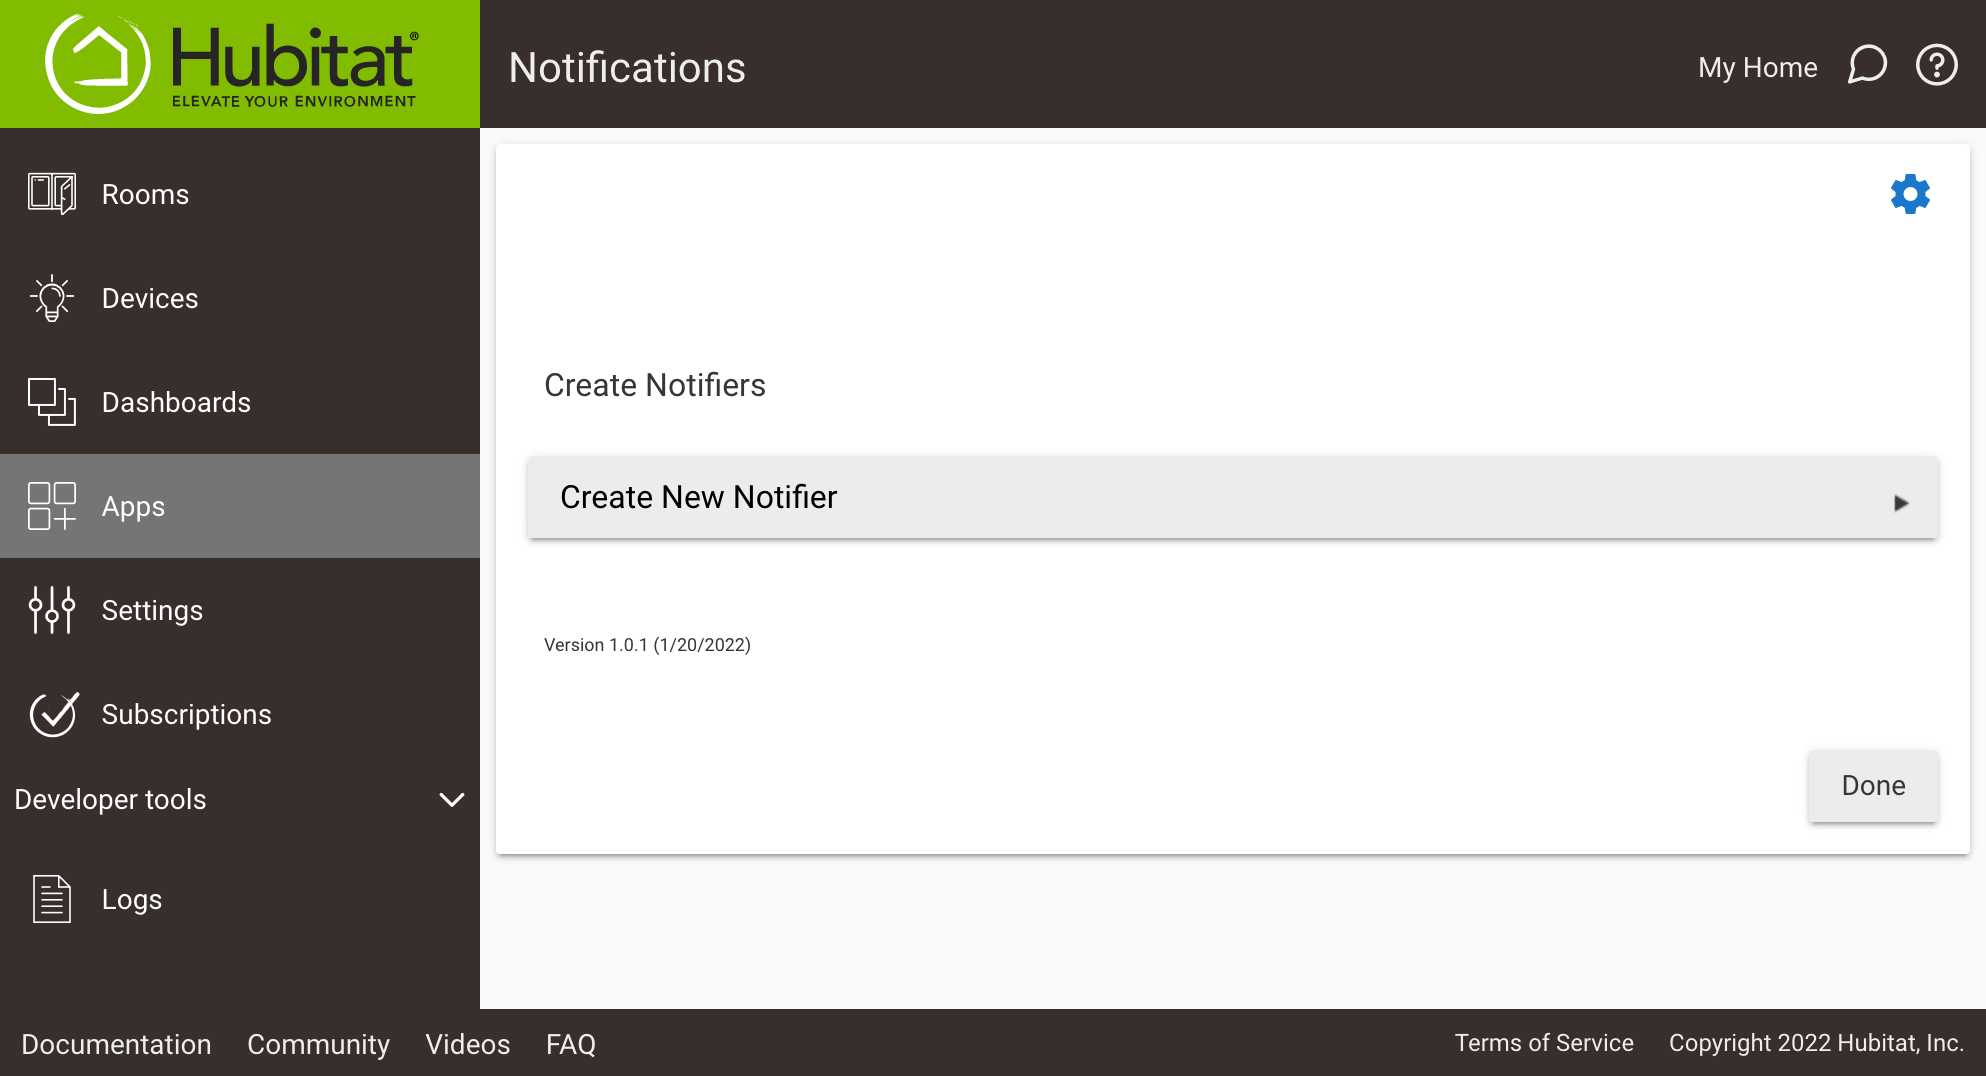 Screenshot of "Create New Notifier" link in app